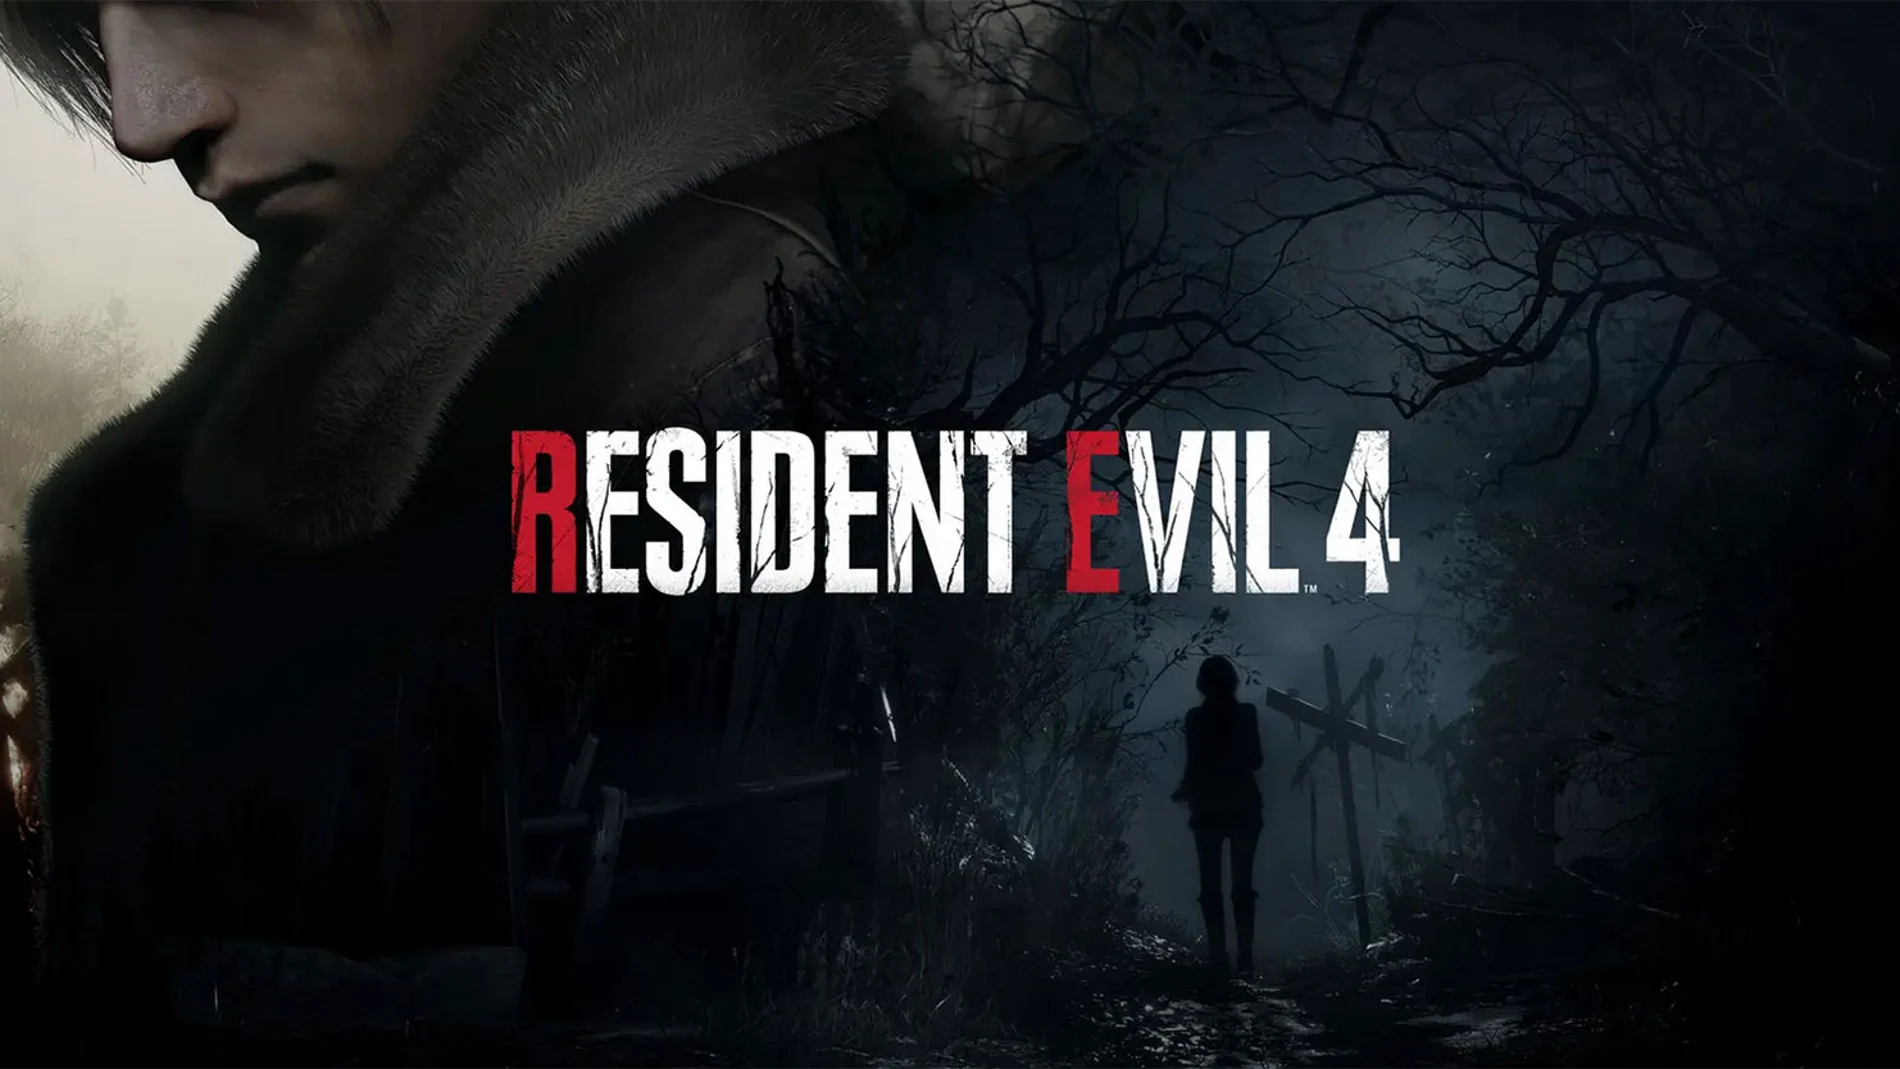 Resident Evil 3 Remake: requisitos mínimos y recomendados en PC